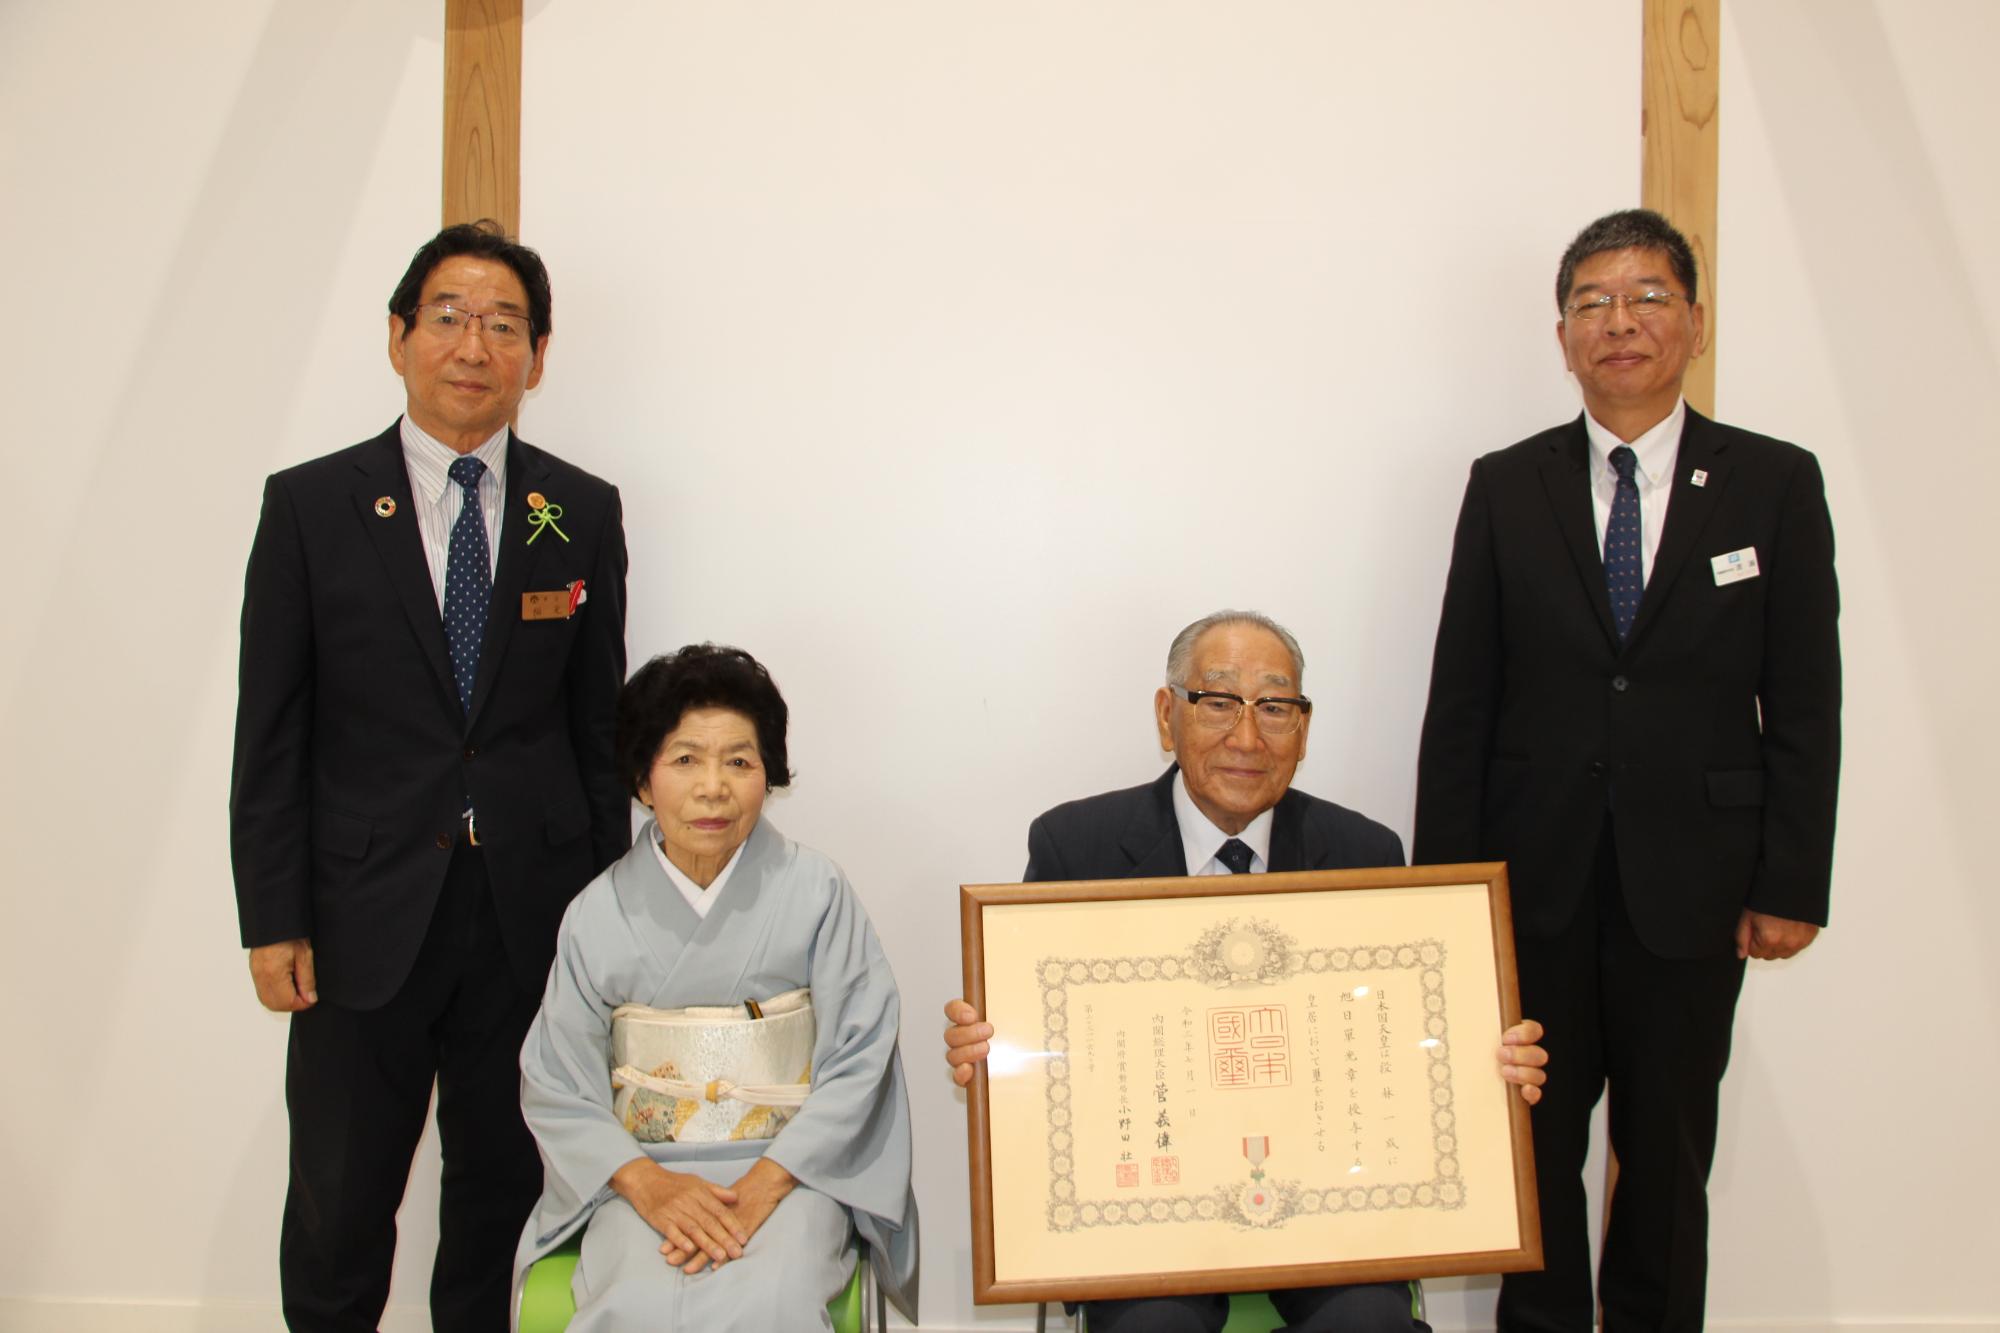 左は福元市長、中は勲記を手にした段林さんご夫妻、右は兵庫県西播磨県民局長が並んでいる写真